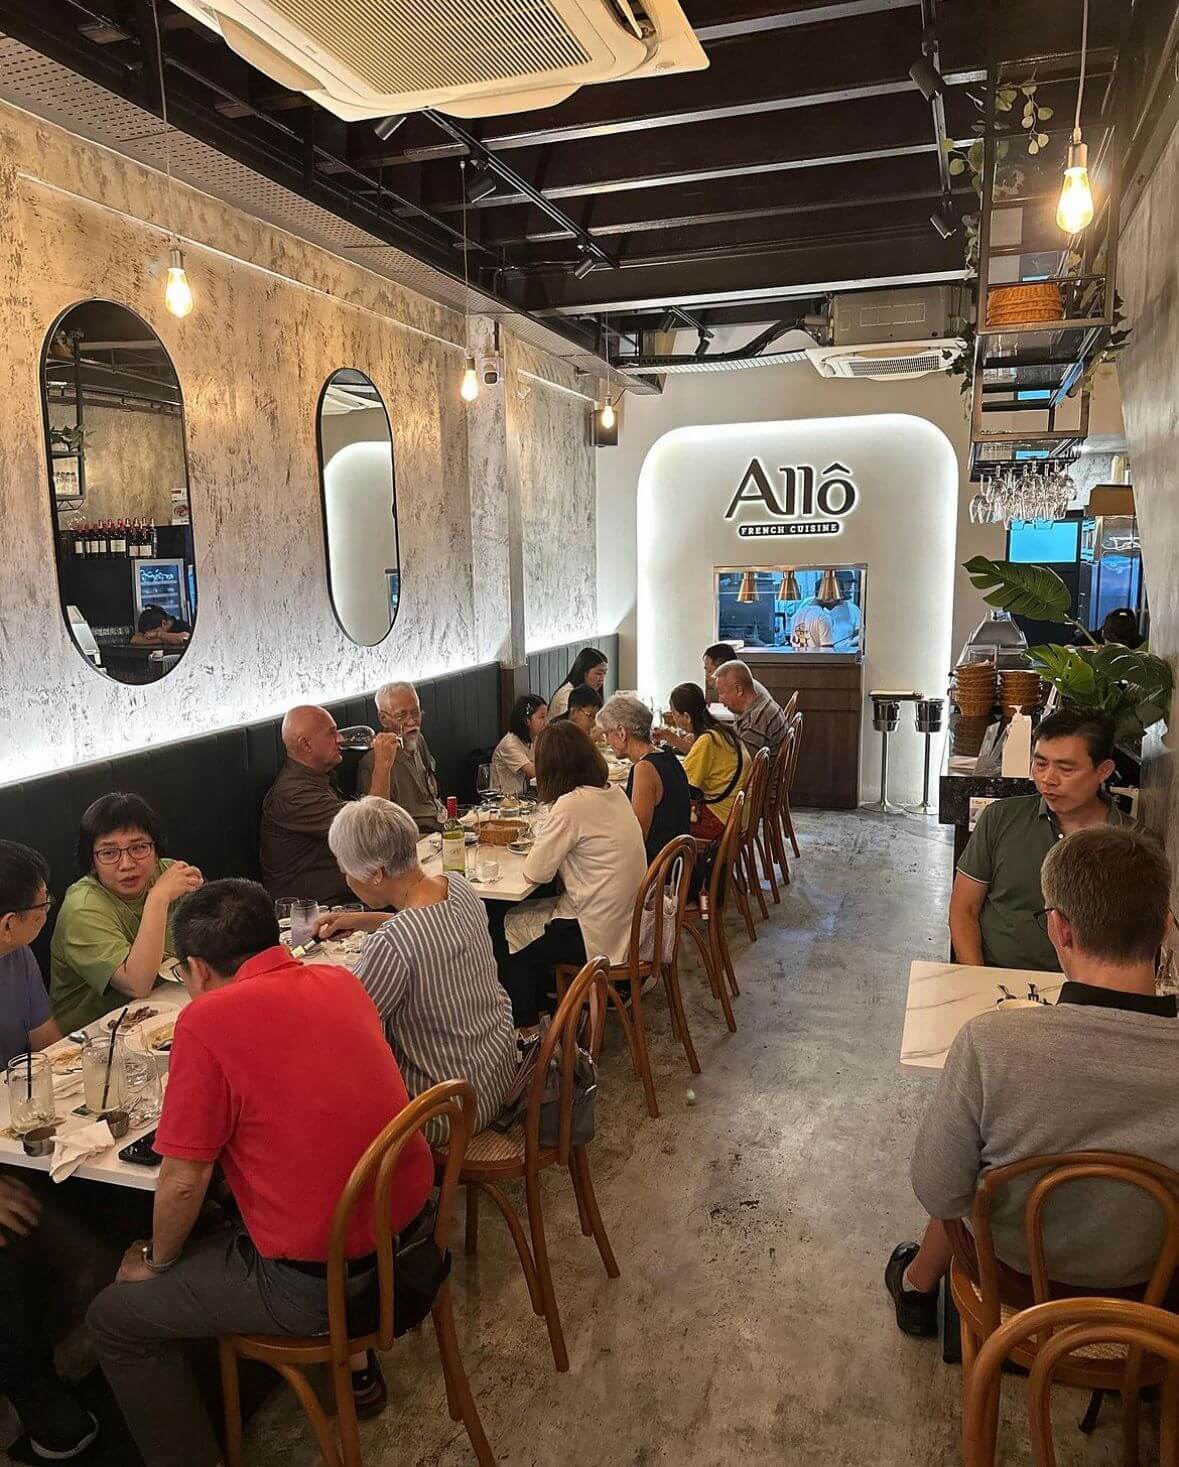 (已失效)Allô French Cuisine Restaurant for Sale/Takeover/Expansion - Fully Equipped with Excellent Reviews